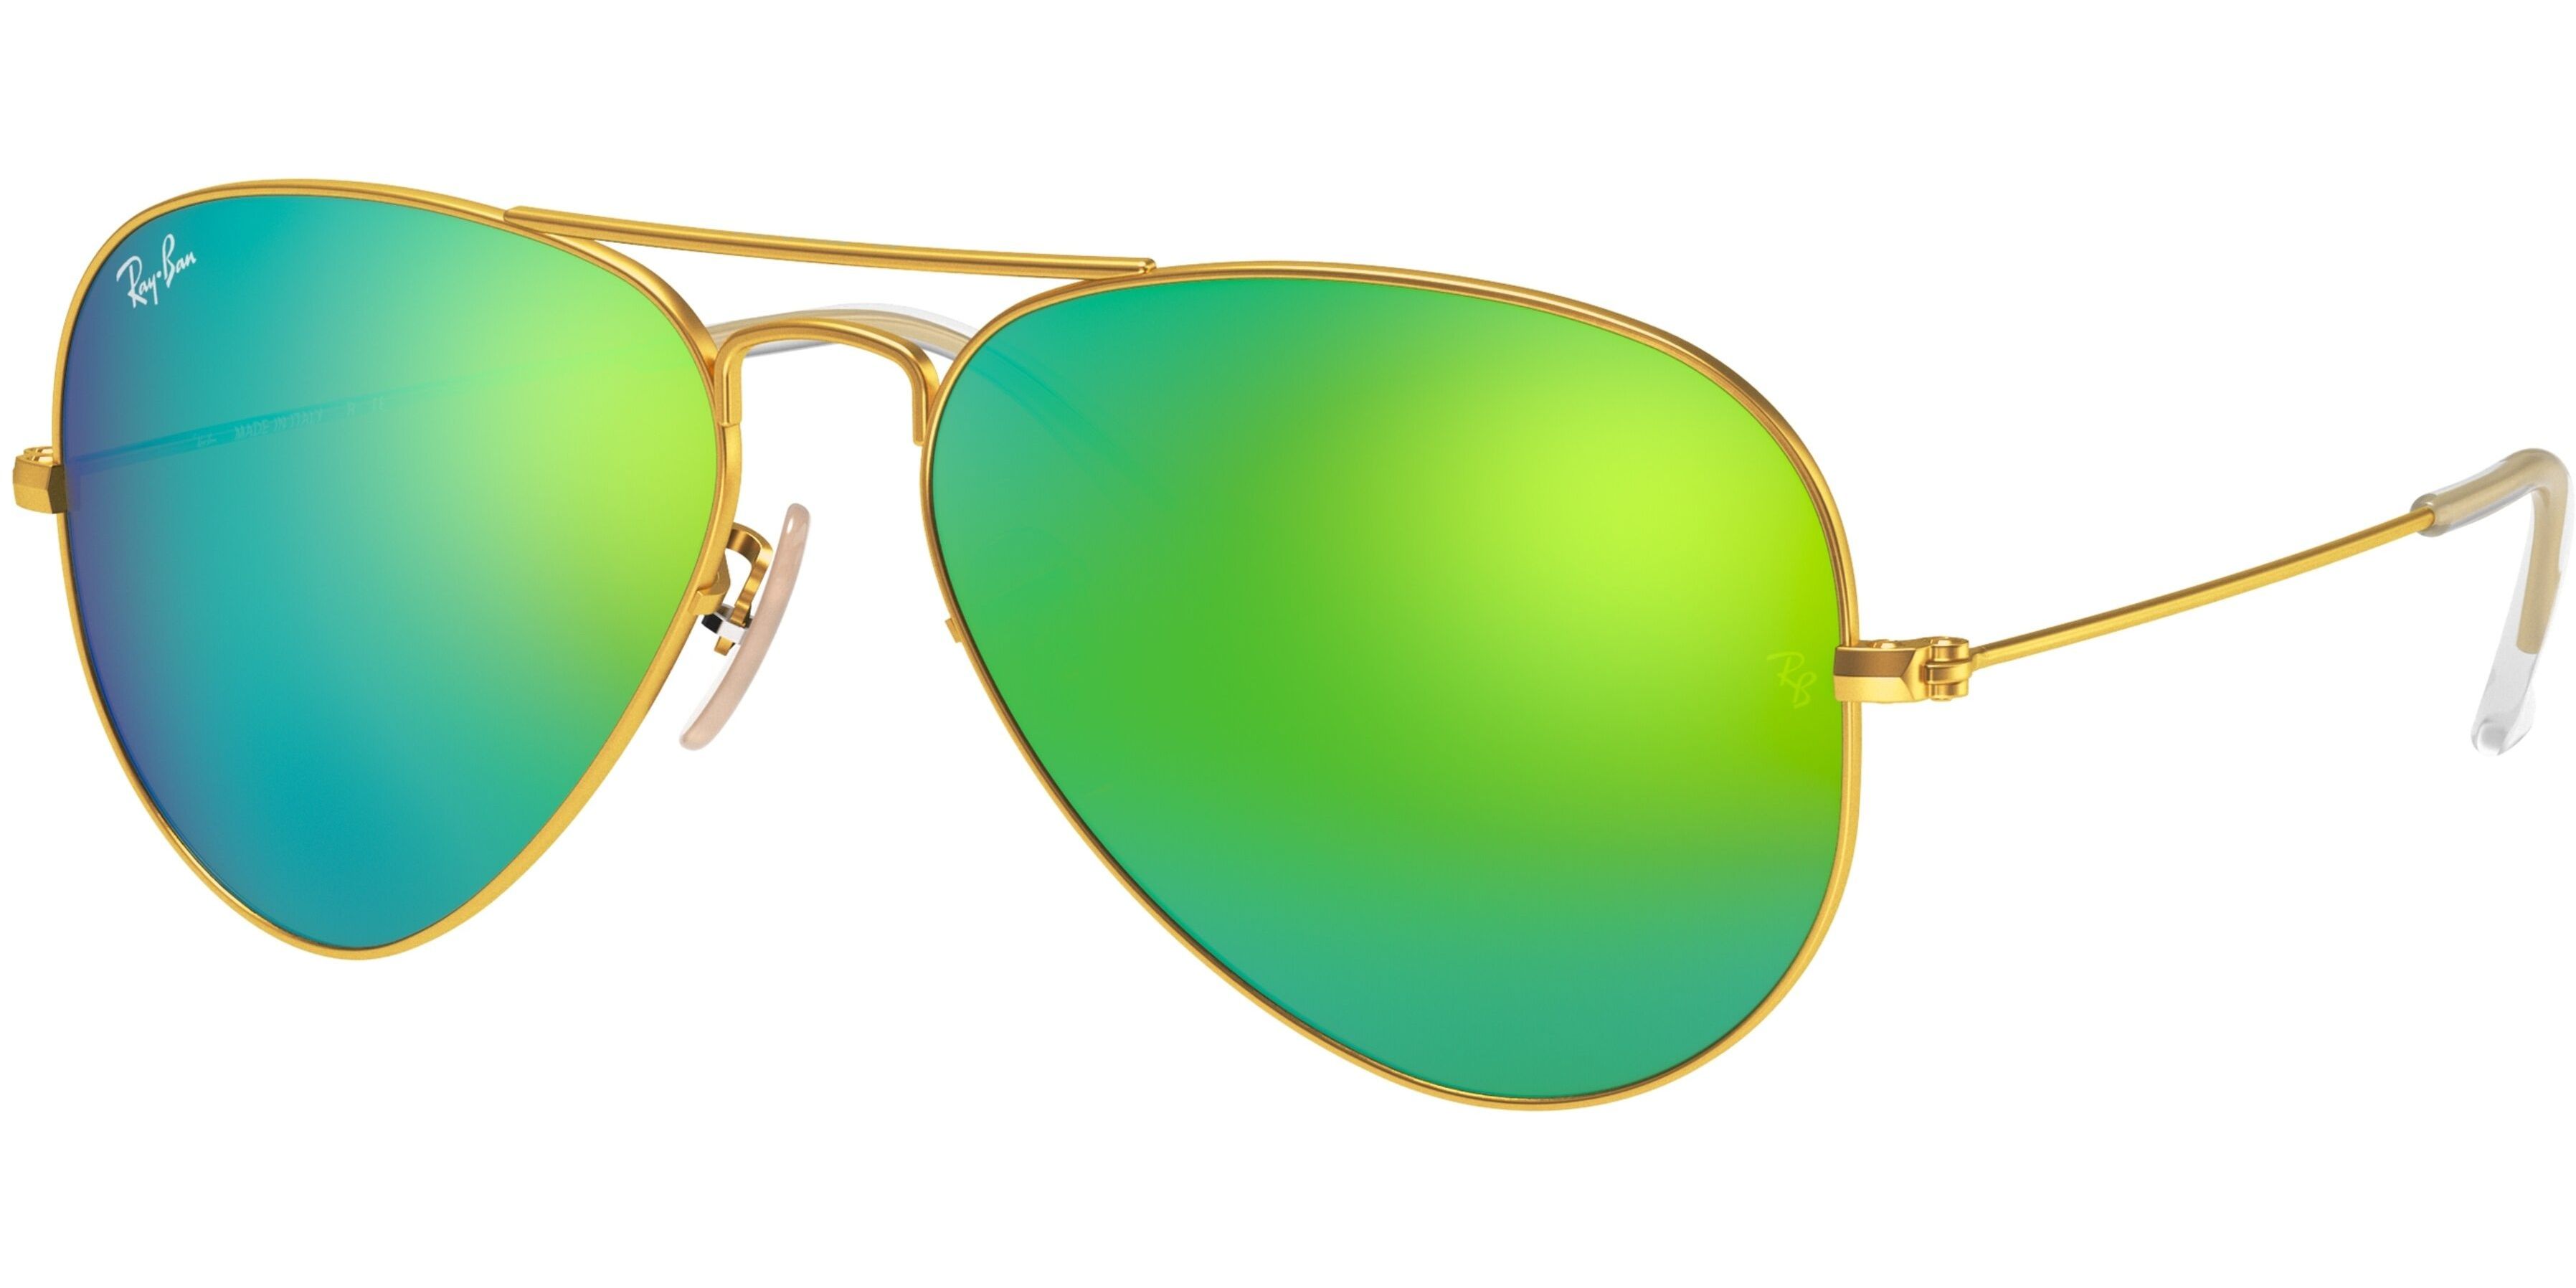 Sluneční brýle Ray-Ban® model 3025, barva obruby zlatá mat zelená, čočka zelená zrcadlo, kód barevné varianty 11219. 